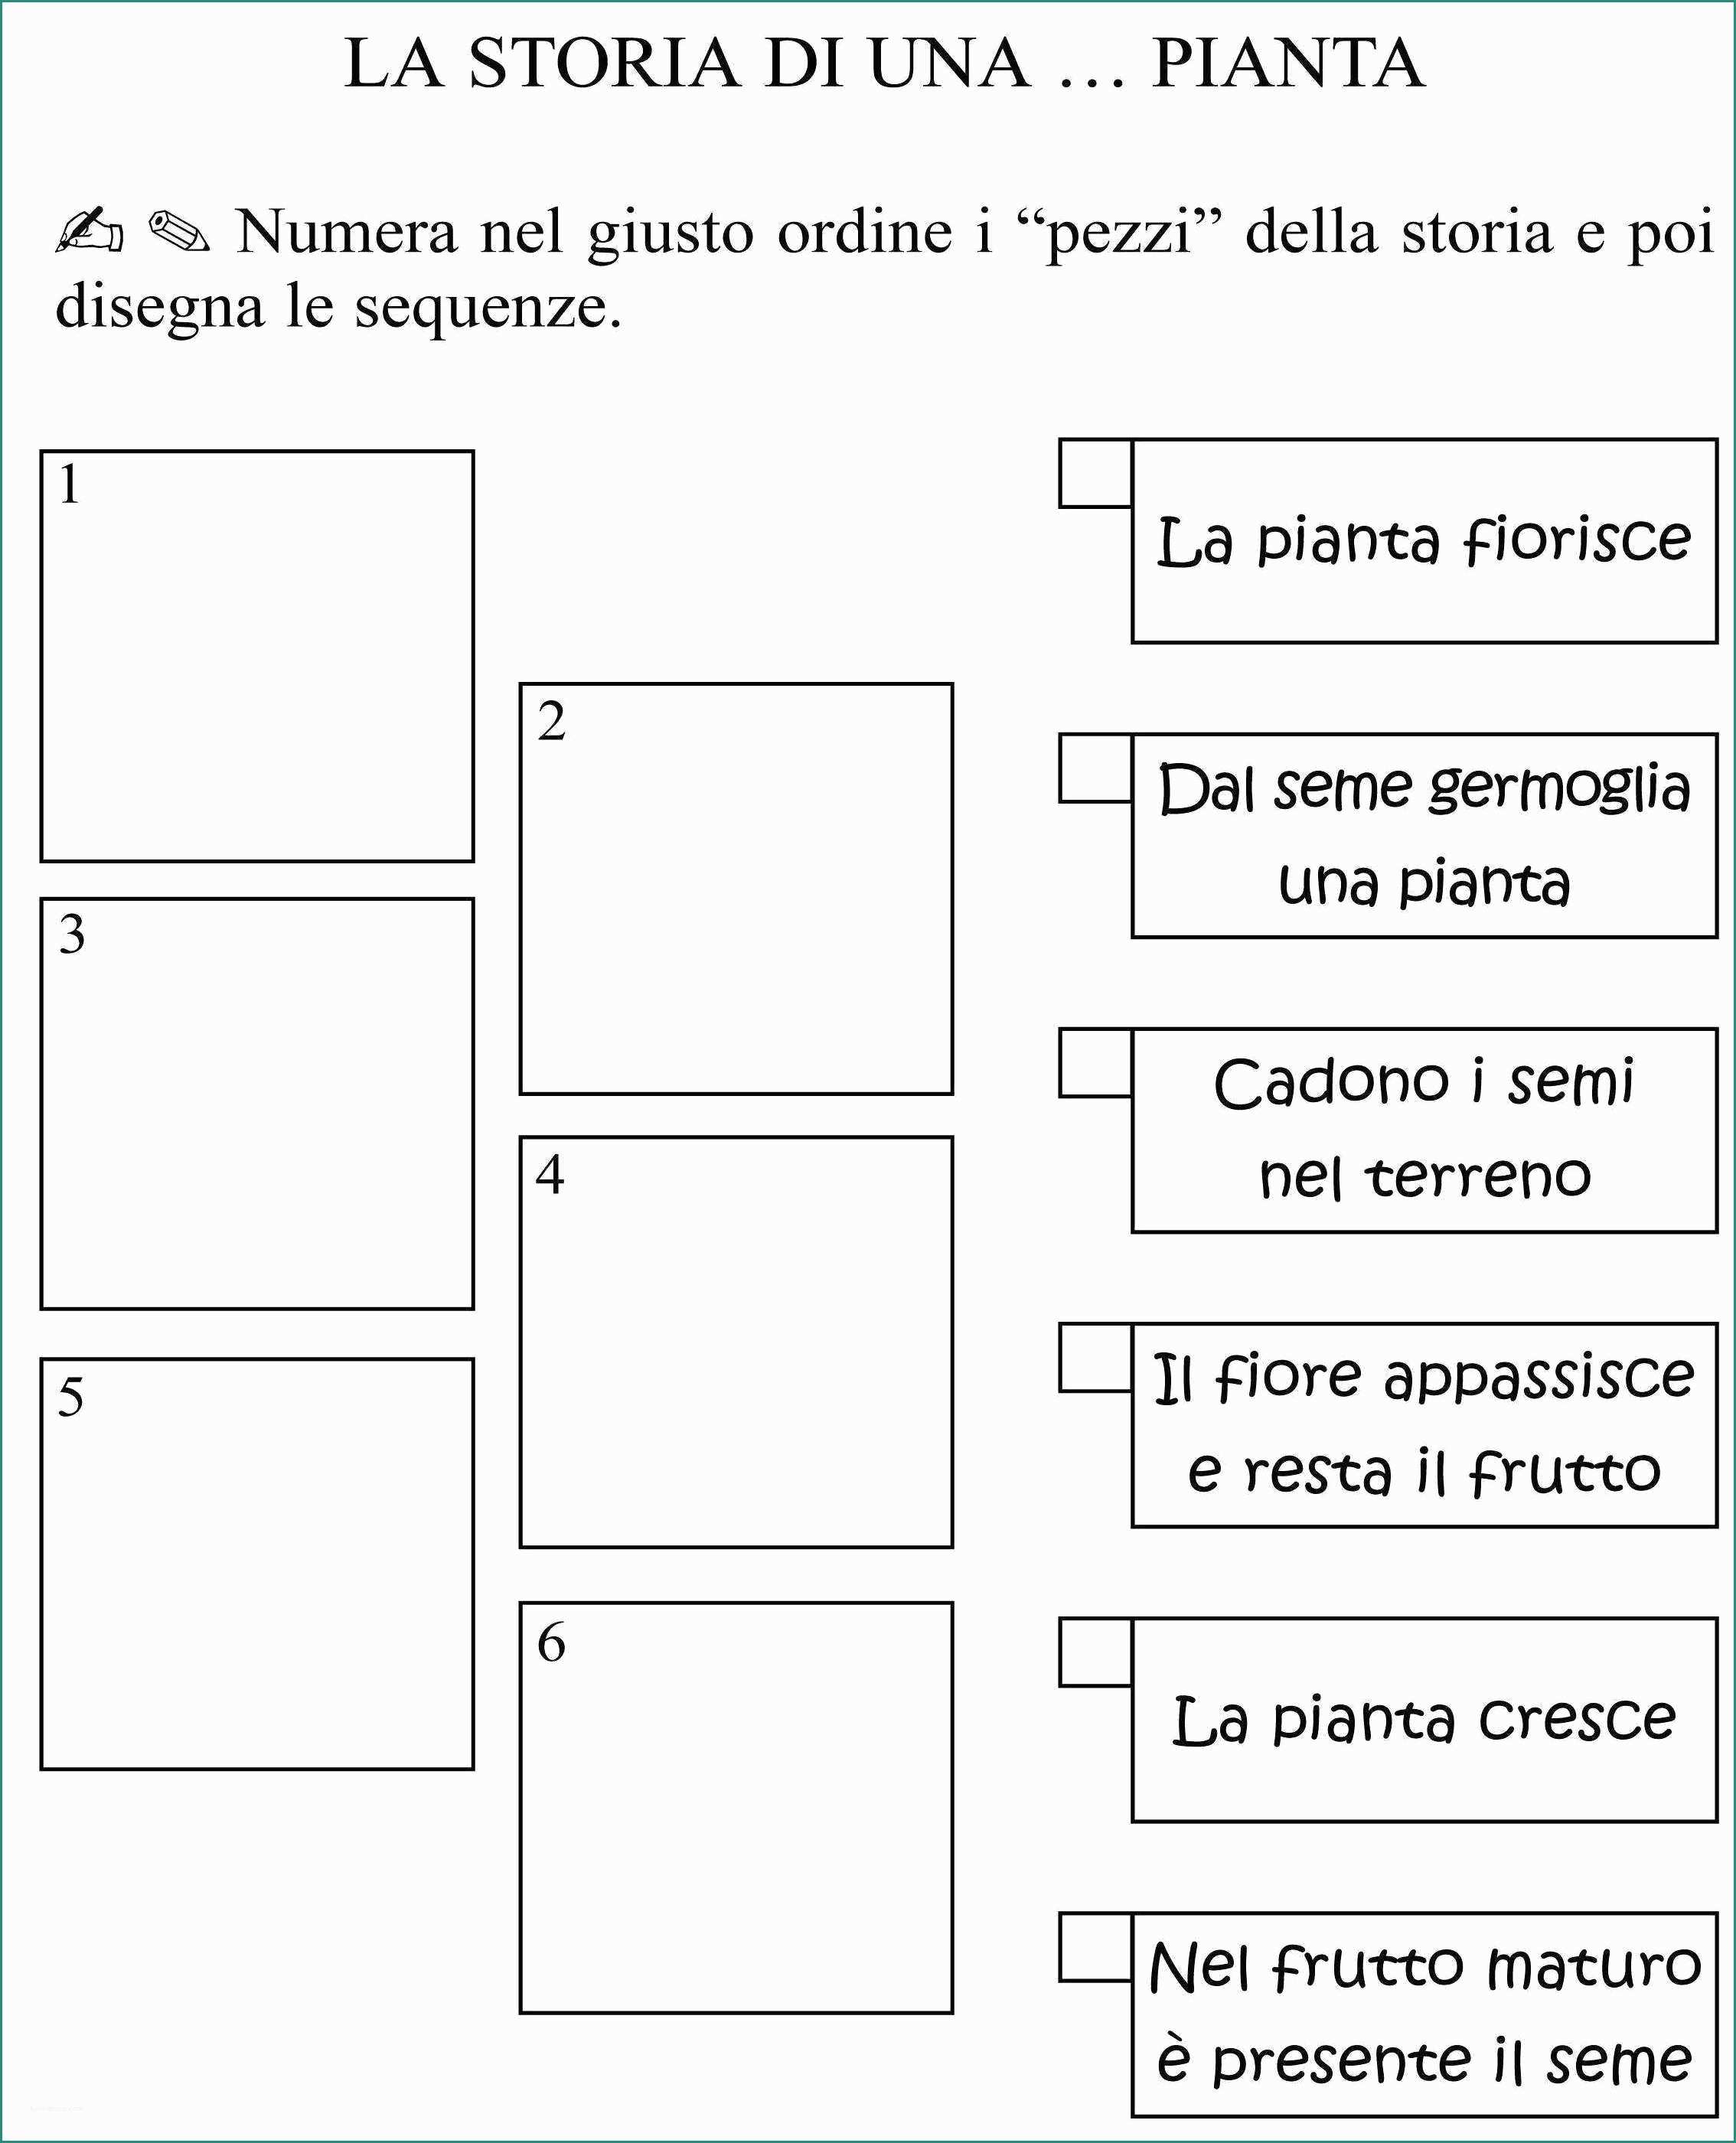 Quaderni Italiano Classe Seconda E Pin Di Rosa Lancellotta Su Teaching Material Nel 2018